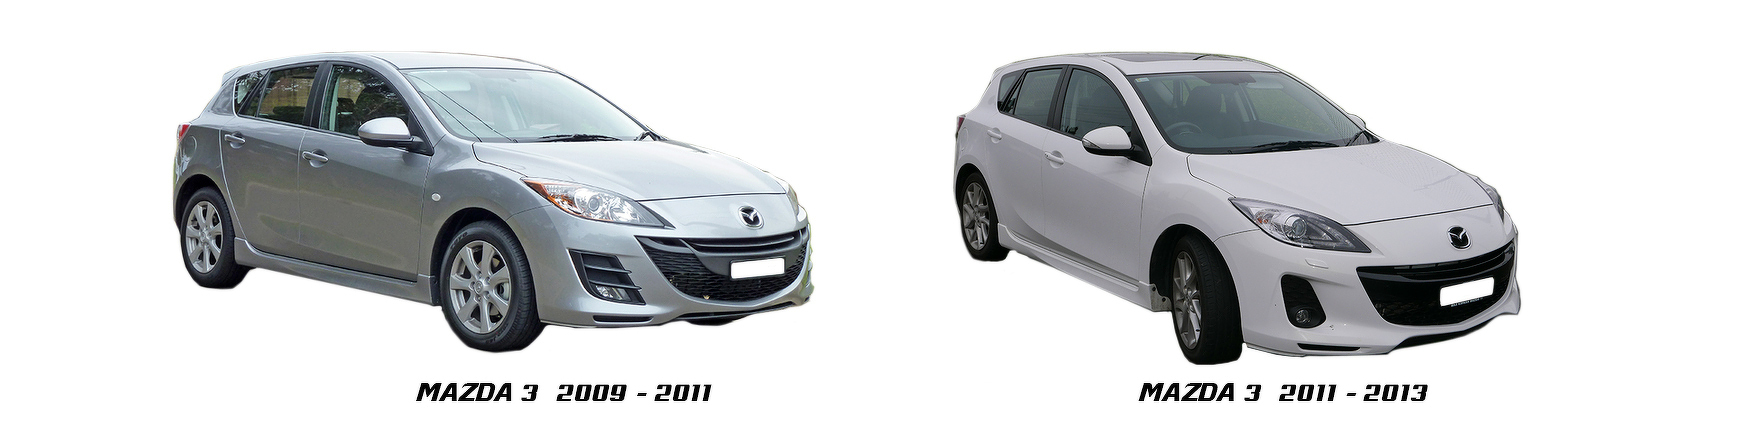 Piezas y Recambios de Mazda 3 de 2009 a 2013 | Visite Veramauto.es